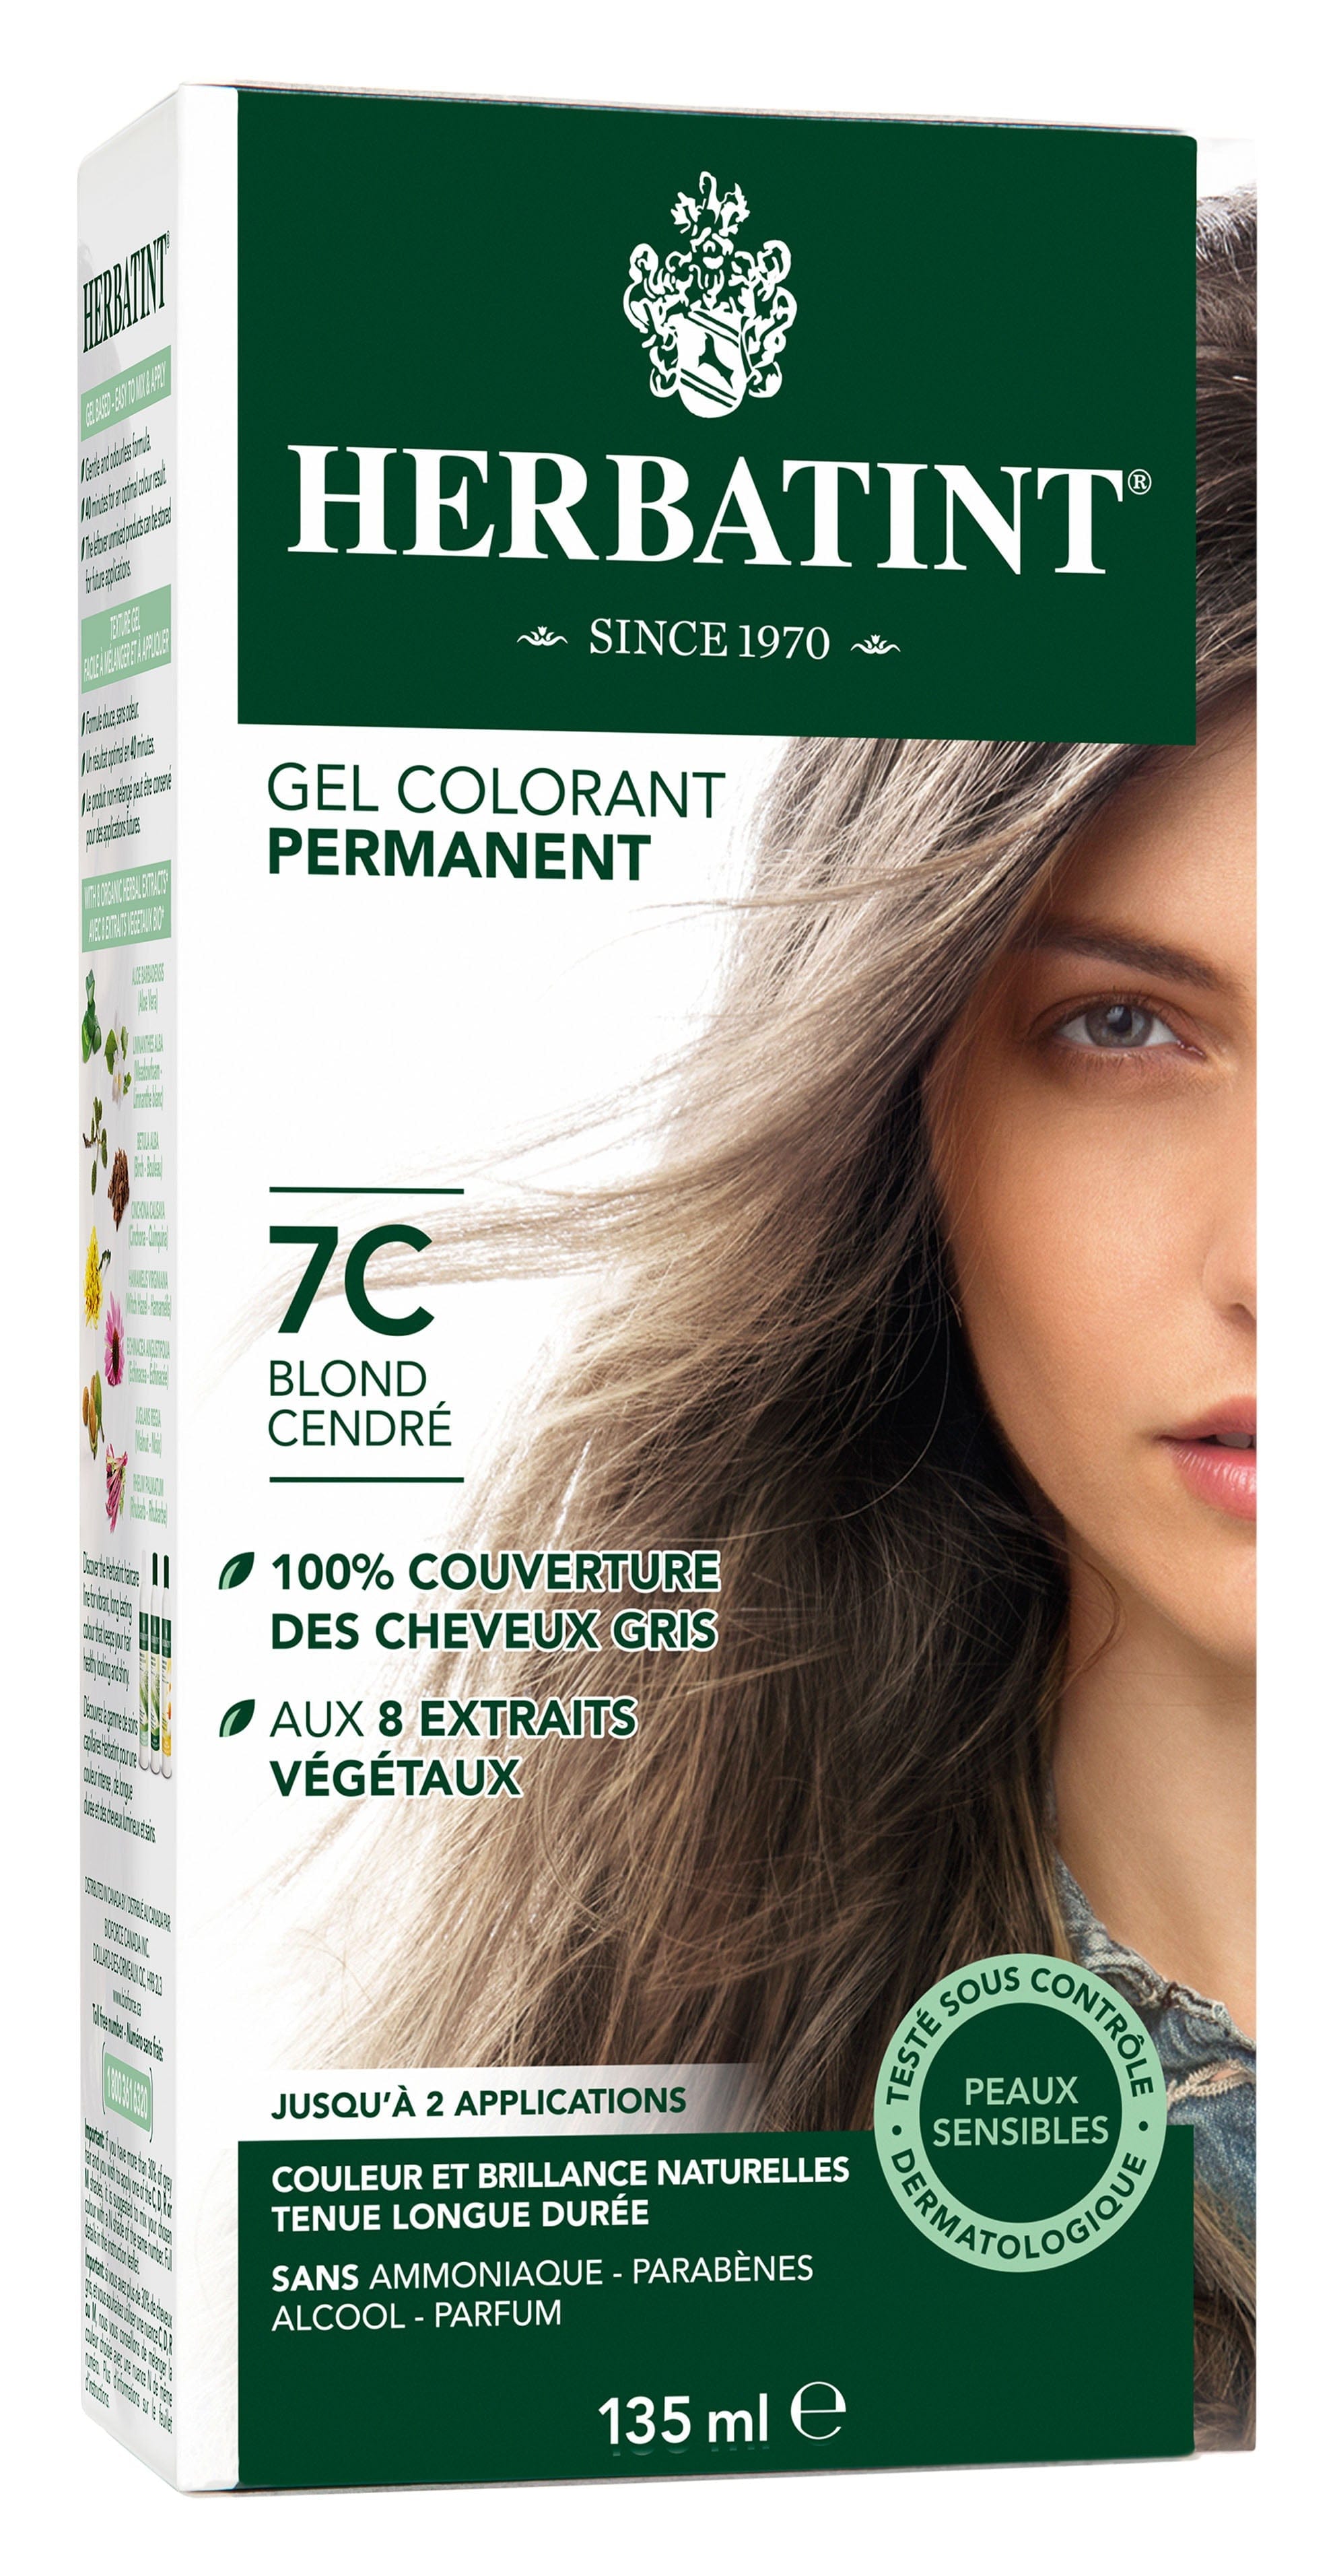 HERBATINT Soins & beauté Teinture 7C Blond cendré 135ml